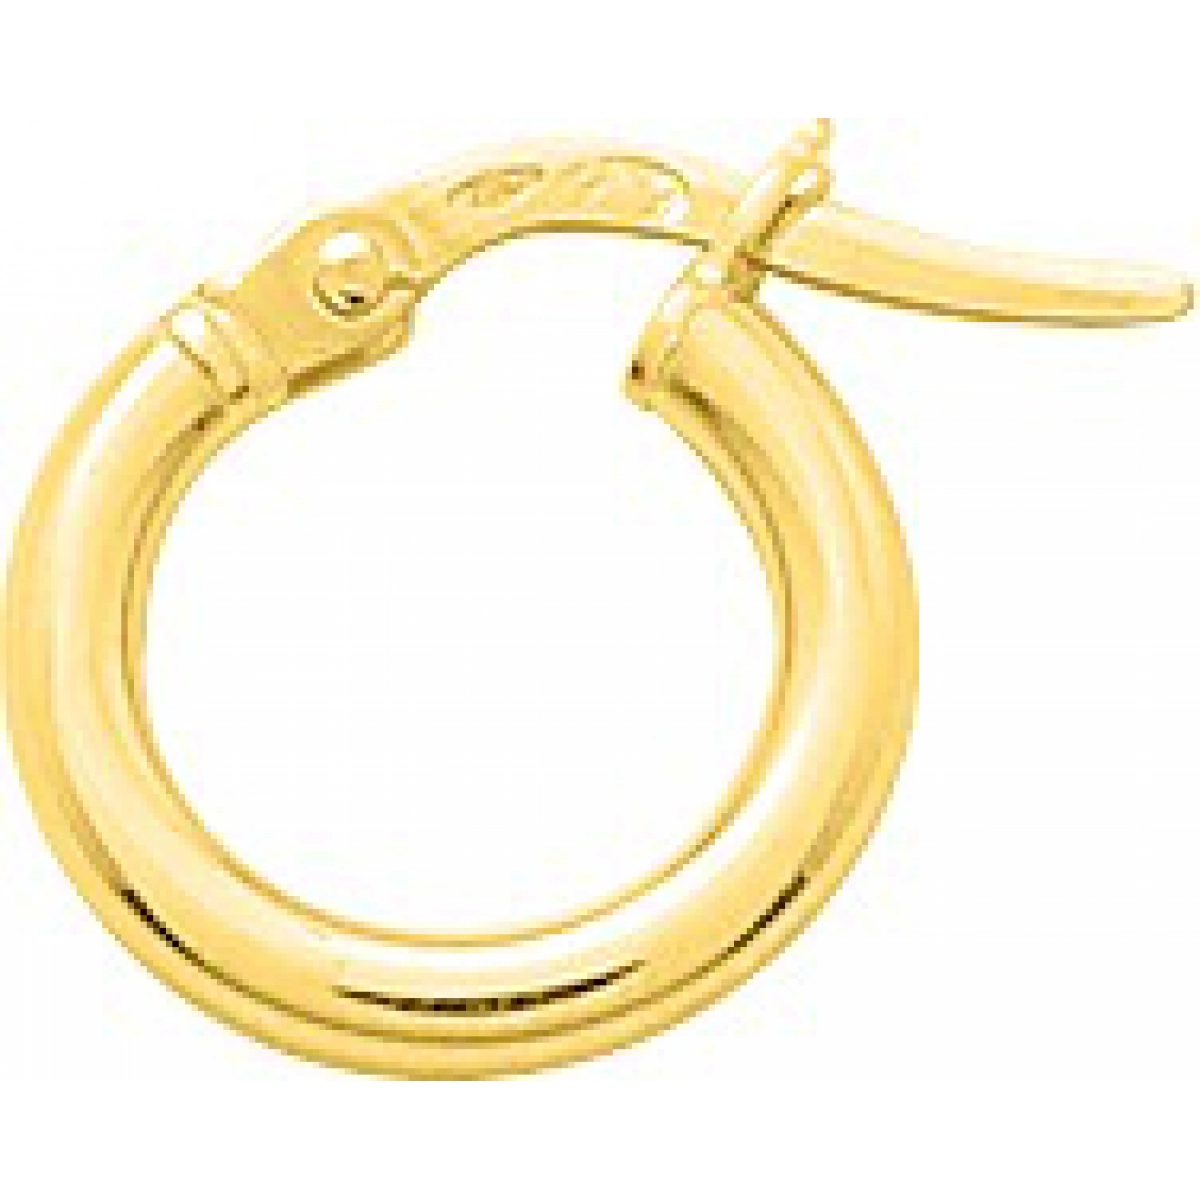 Hoops earrings pair plain 9K YG  Lua Blanca  650067.2.0